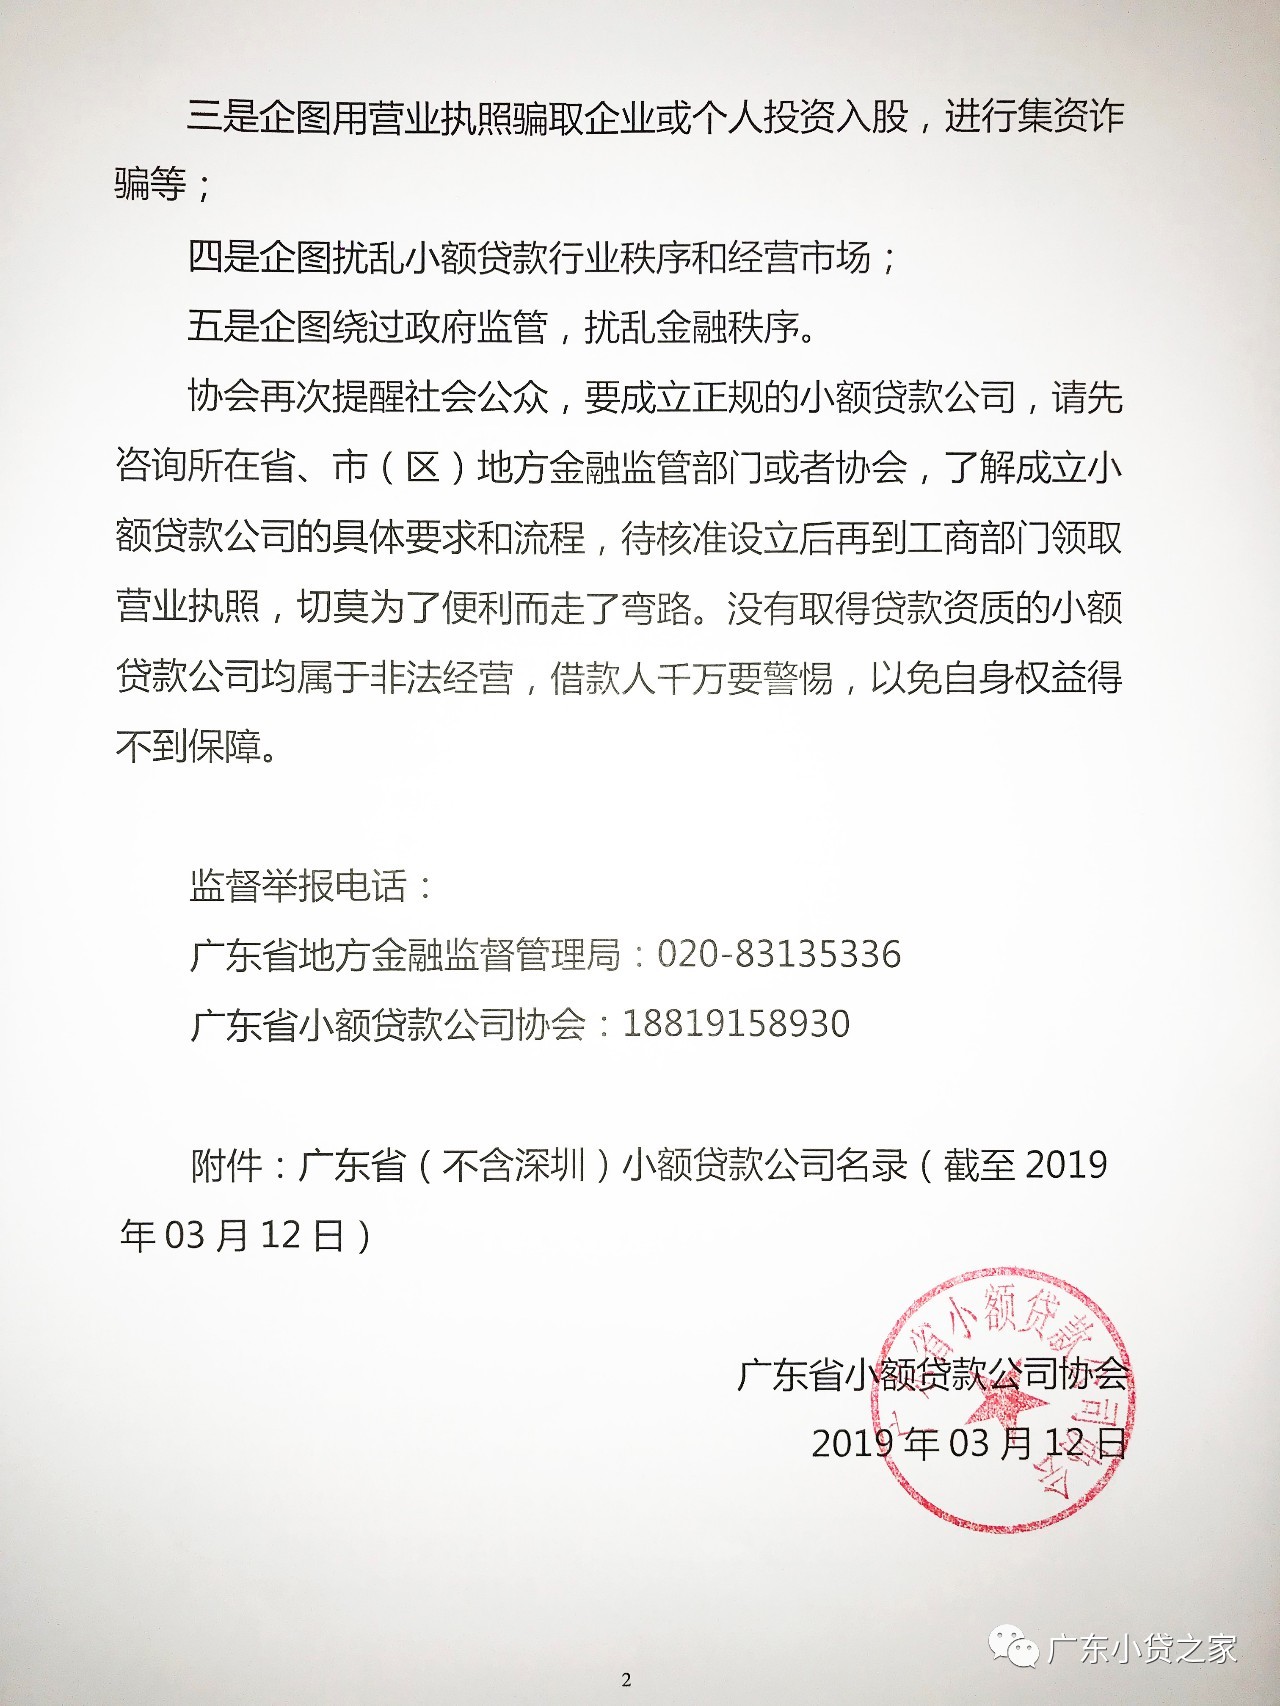 【协会通知】关于广东省内部分未经核准、自行在工商部门注册“小额贷款公司”的风险提示